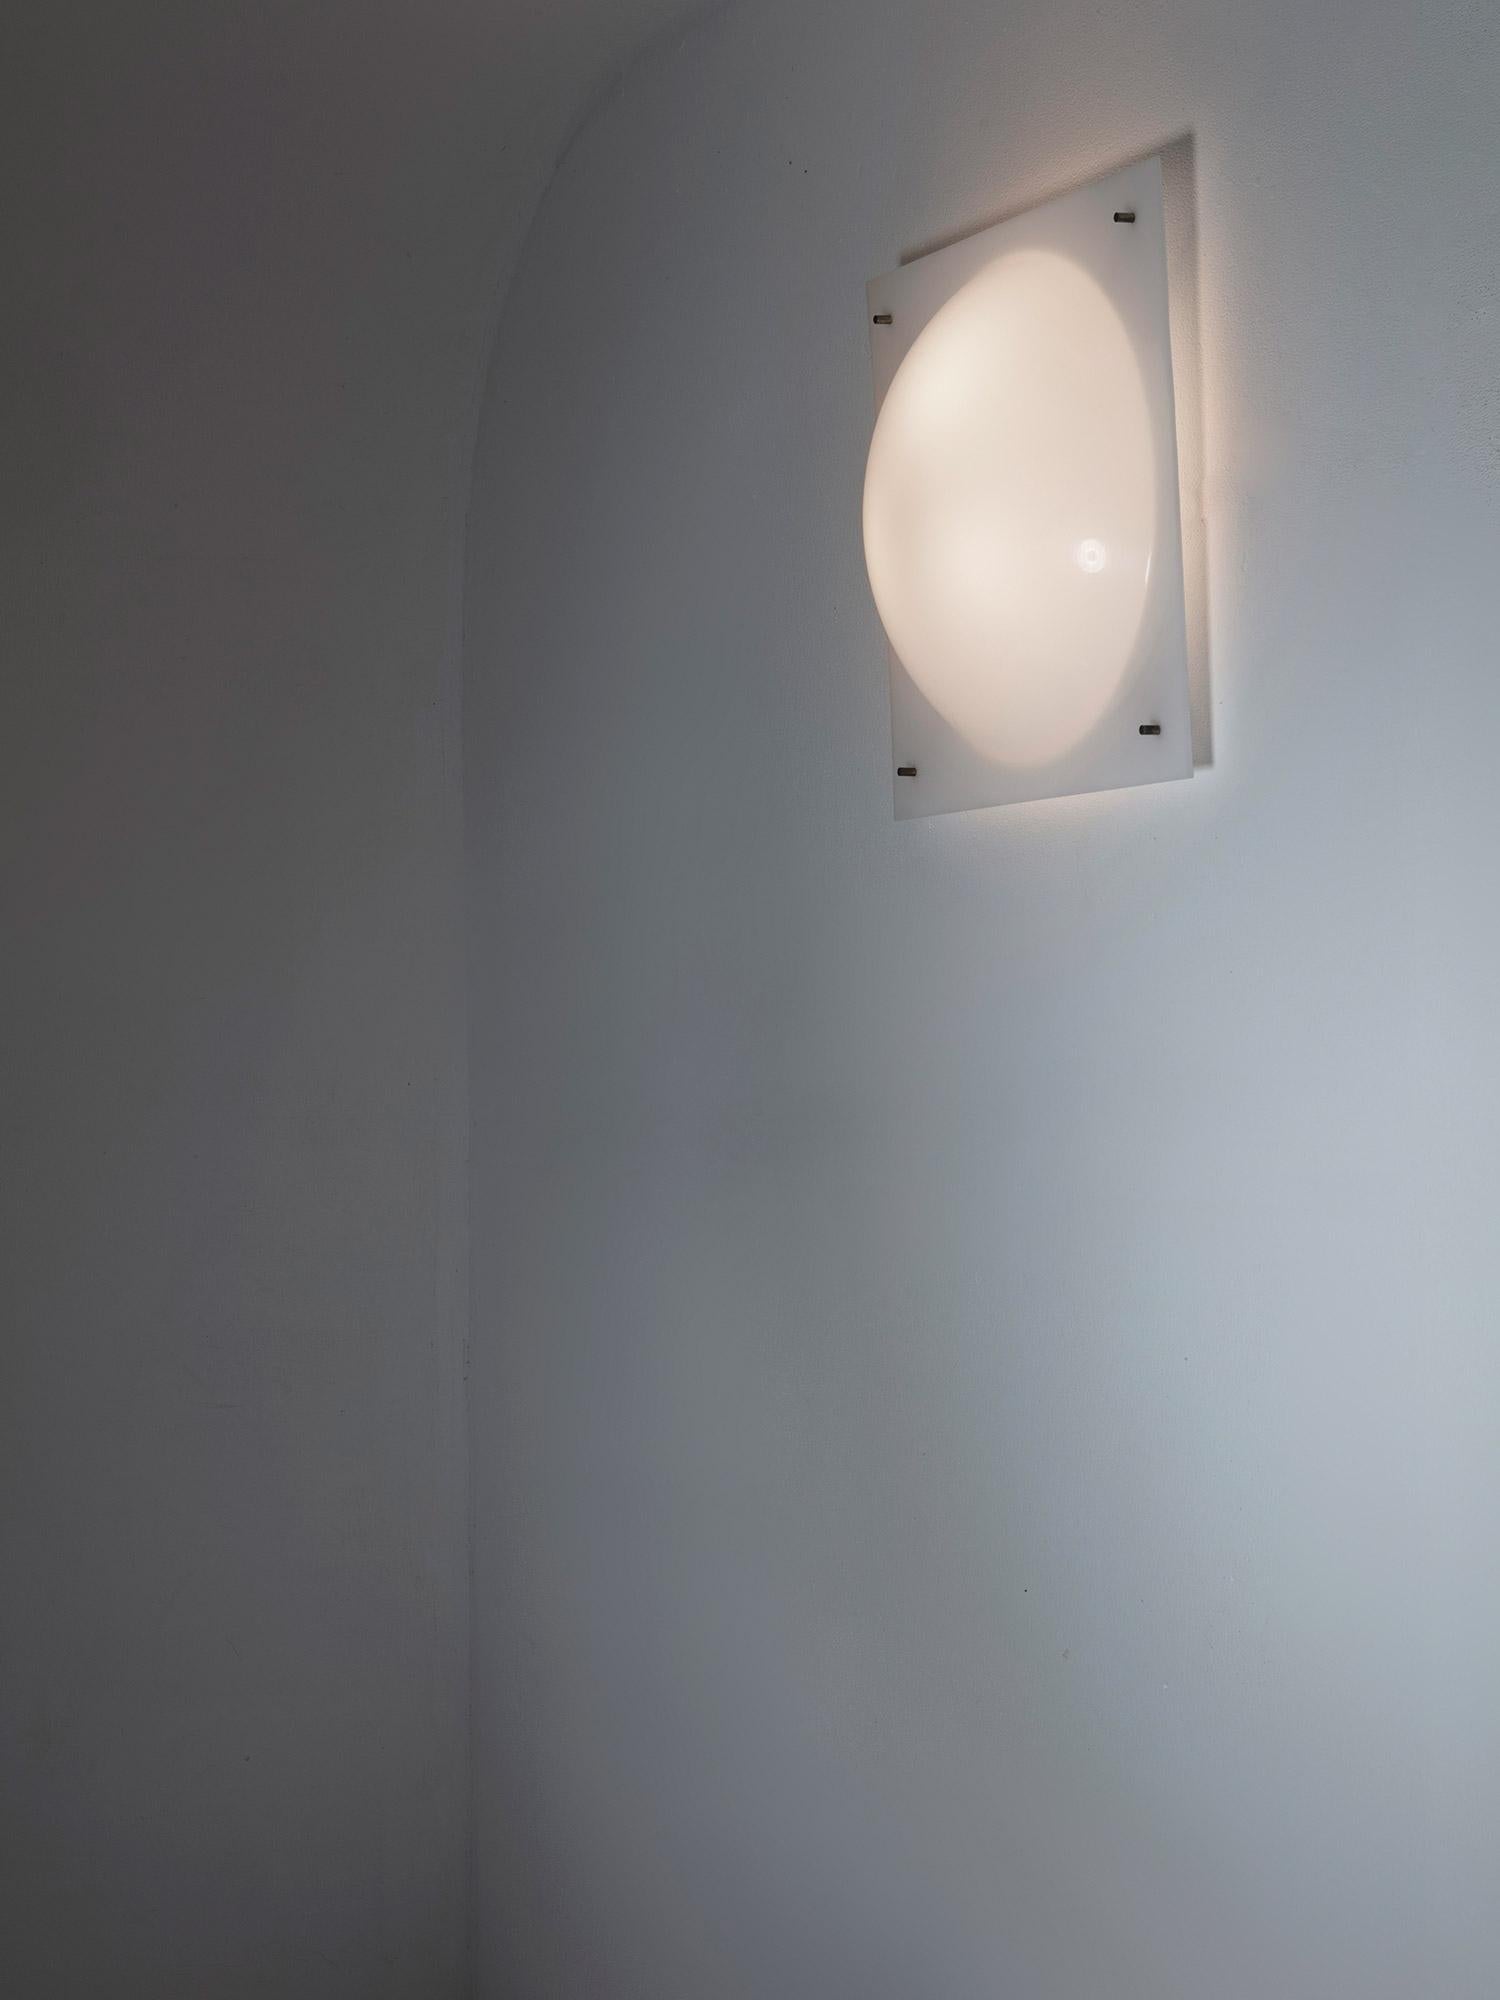 Applique modèle 199b de Giuseppe Ostuni pour O-Luce.
Plexiglas blanc soutenu par un mince cadre en laiton.
Littérature disponible sur demande.
Trois pièces disponibles.